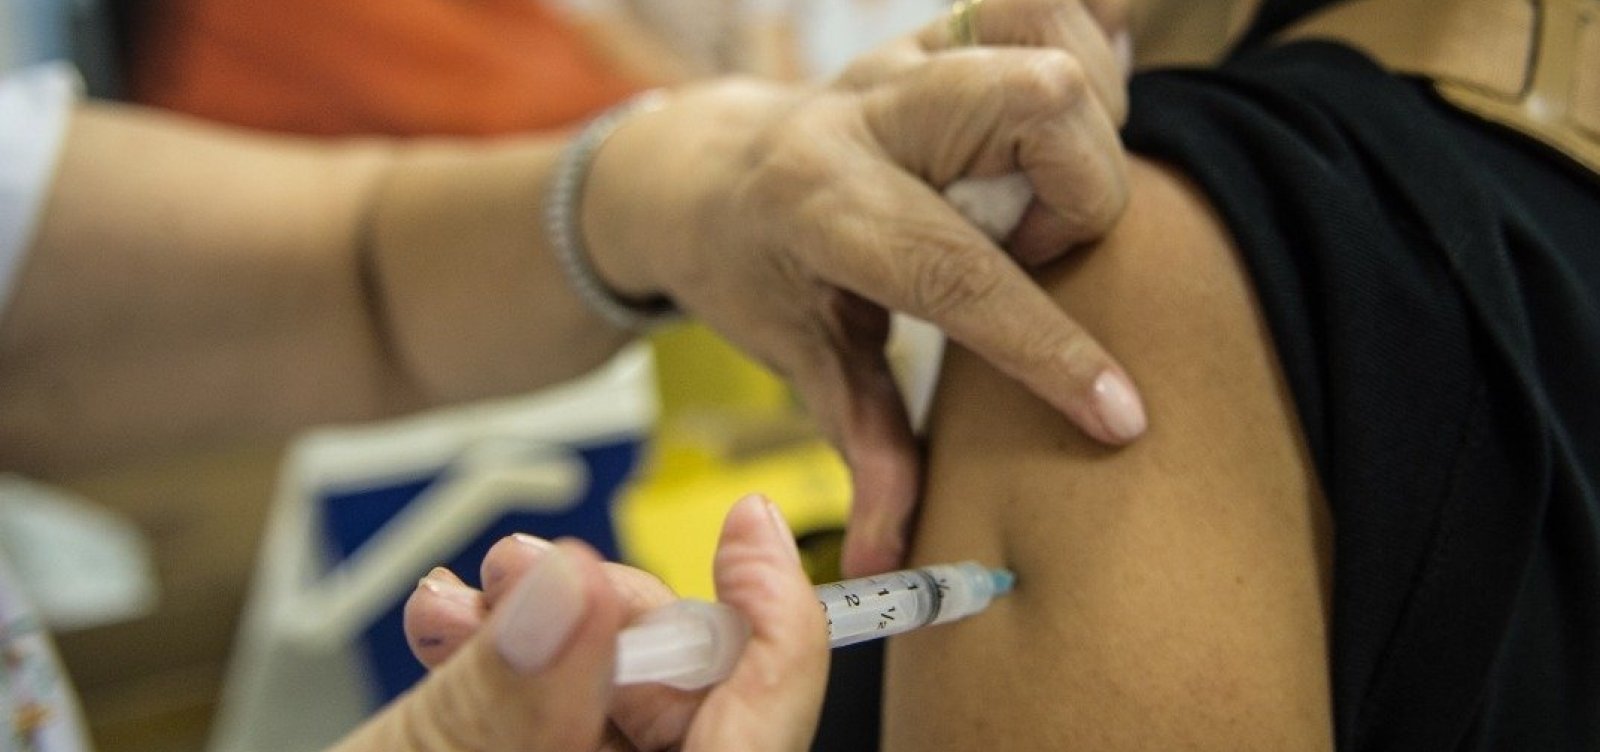 Imunização contra gripe começa nesta segunda na capital baiana; confira